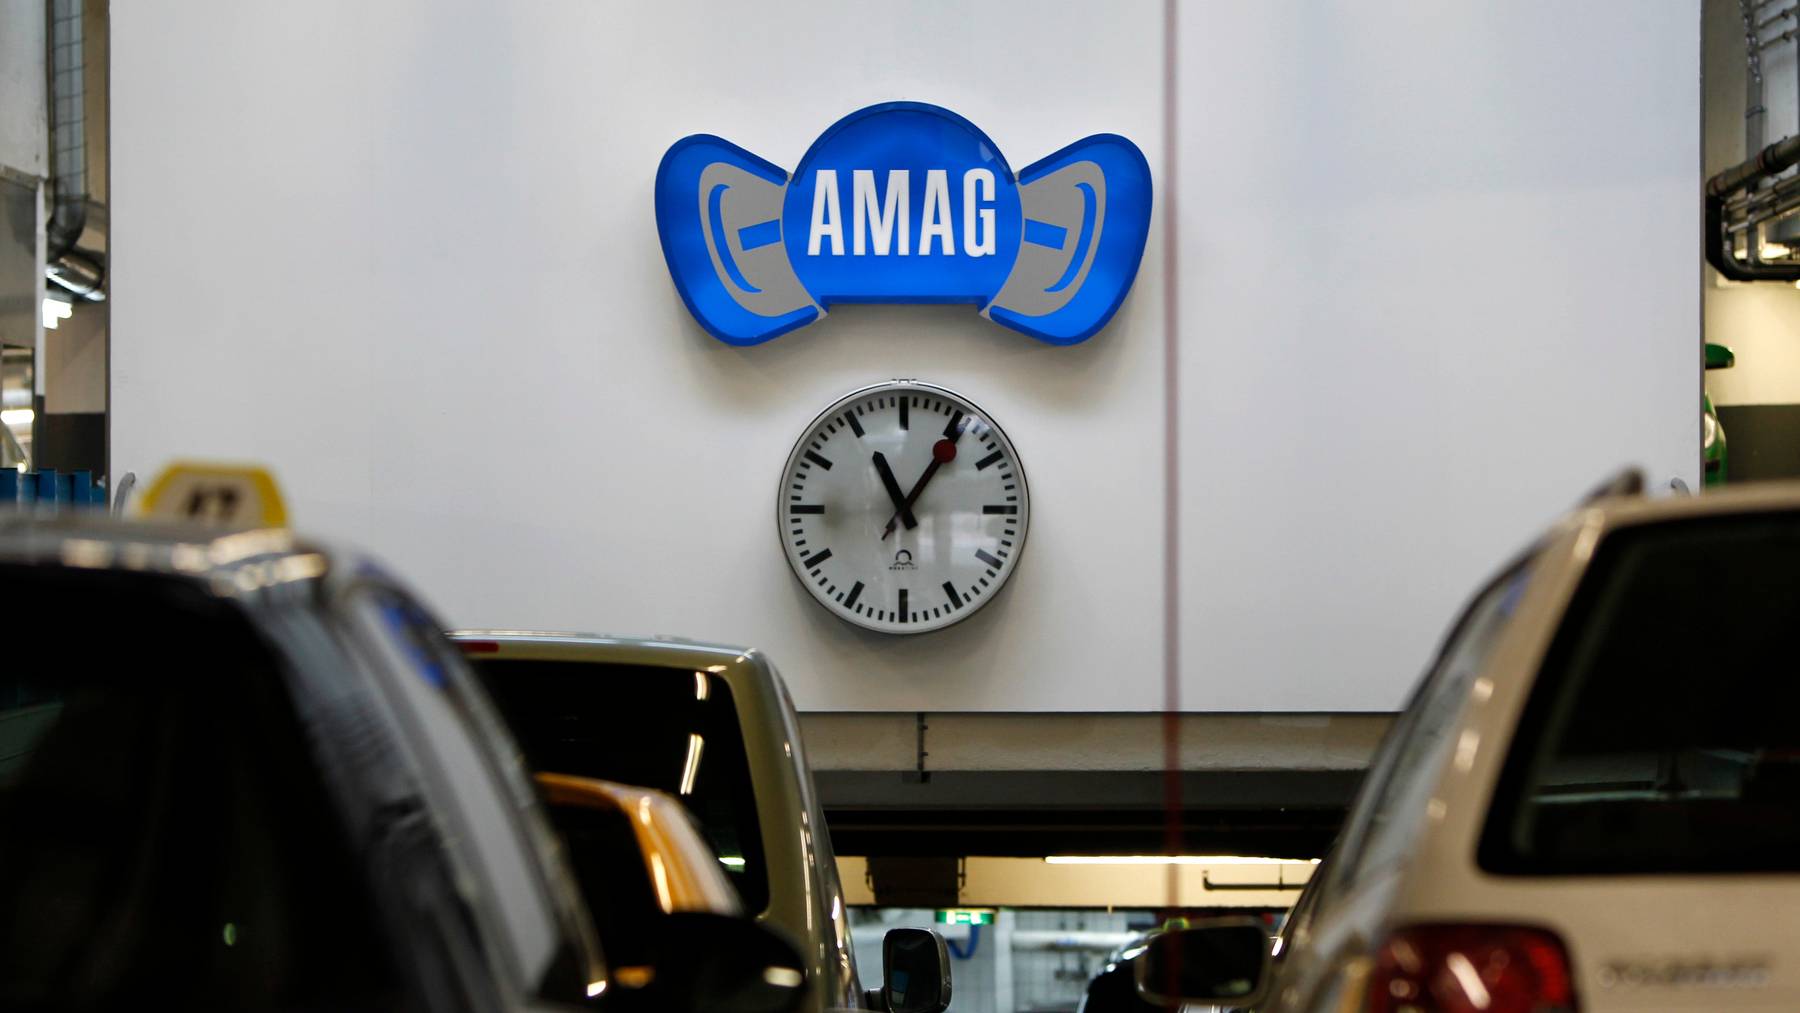 Amag übernimmt Sharoo, über deren Plattform man Autos mieten und vermieten kann (Symbolbild).